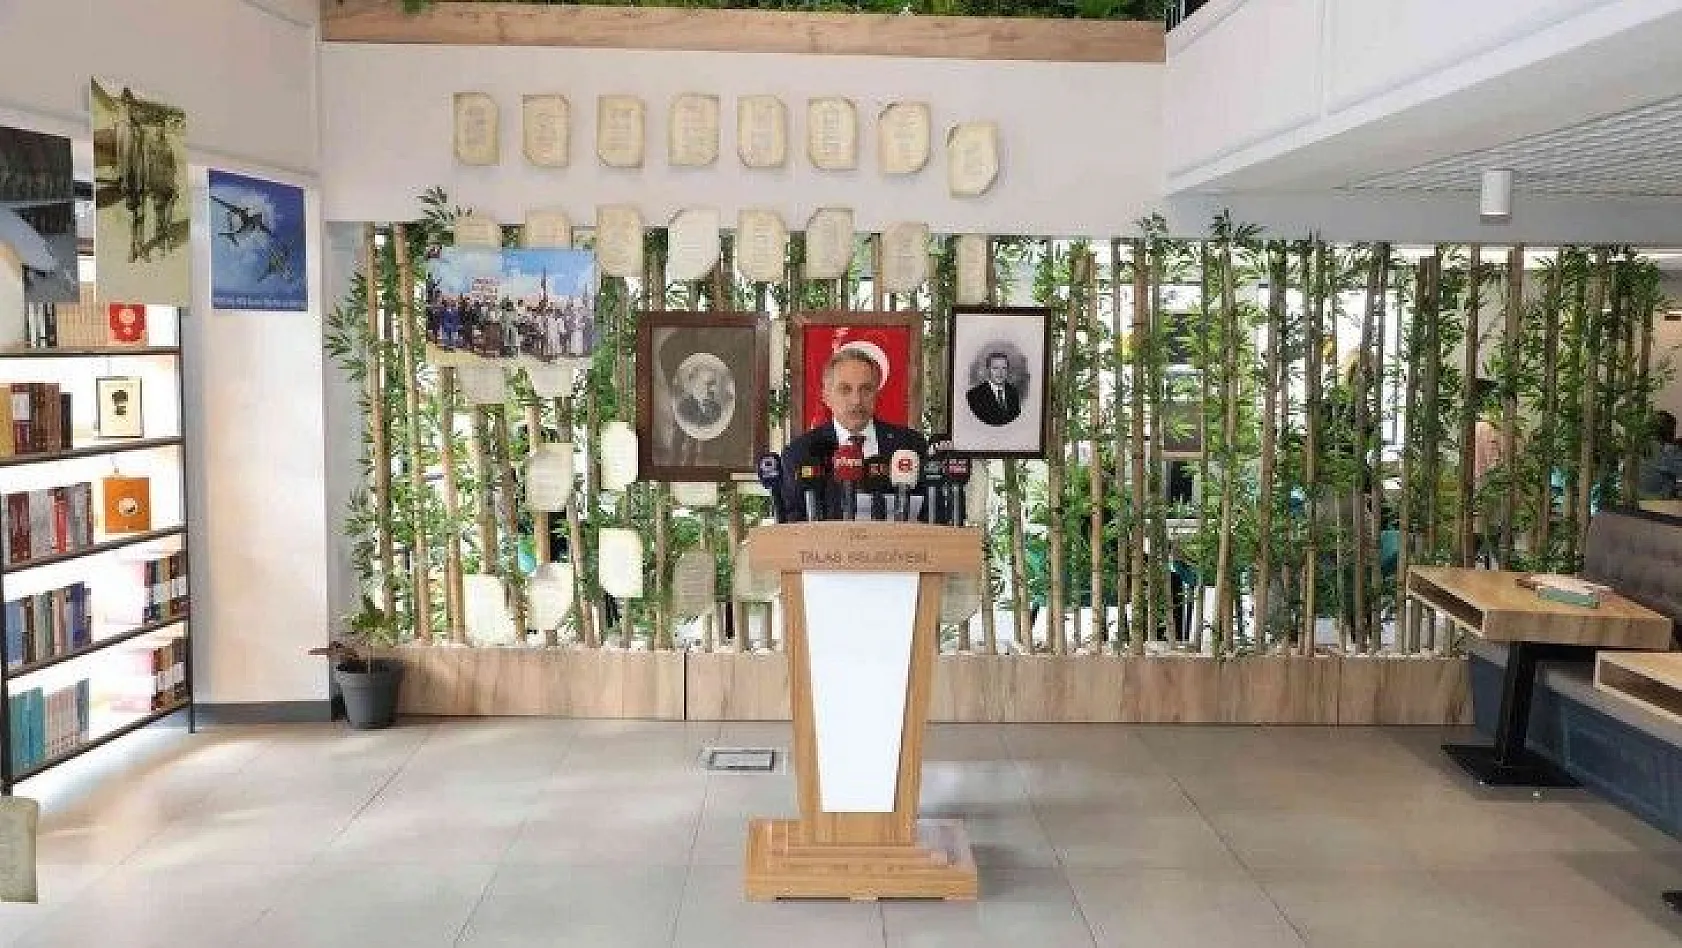 Talas Belediyesi'nden Cumhuriyet'in 100'üncü yılına özel proje ve etkinlikler